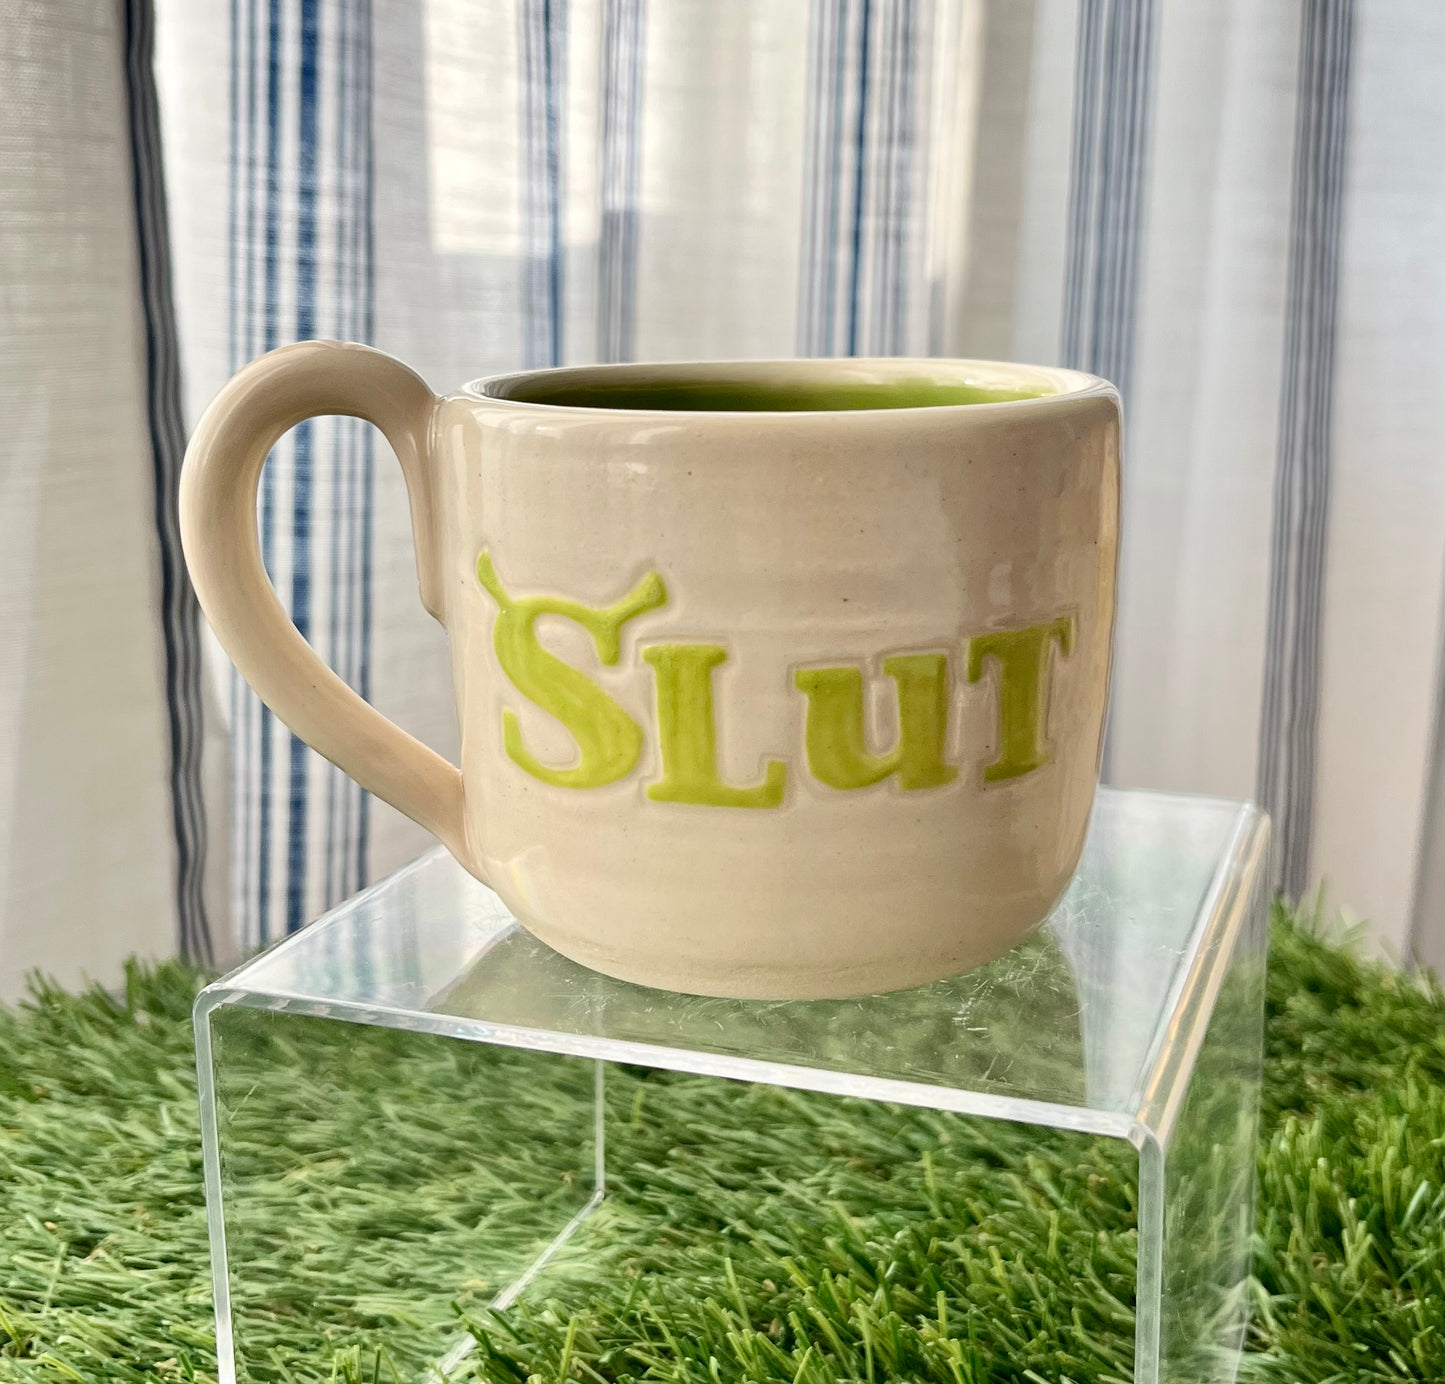 ShrekSlut Mug